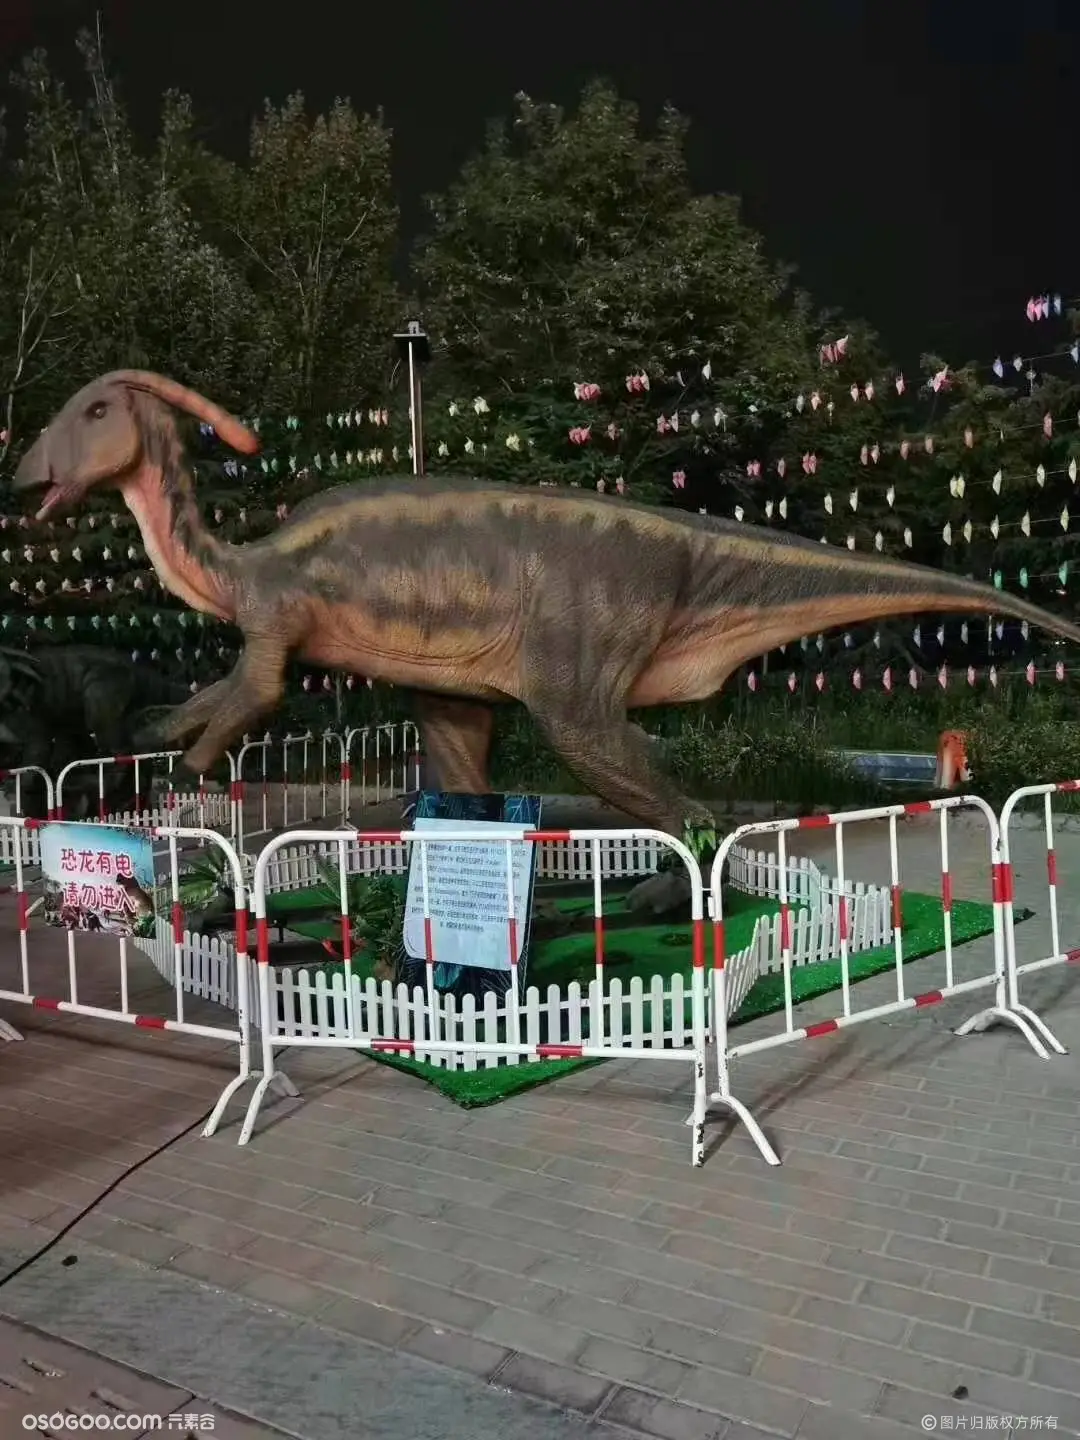 恐龙展 恐龙展览